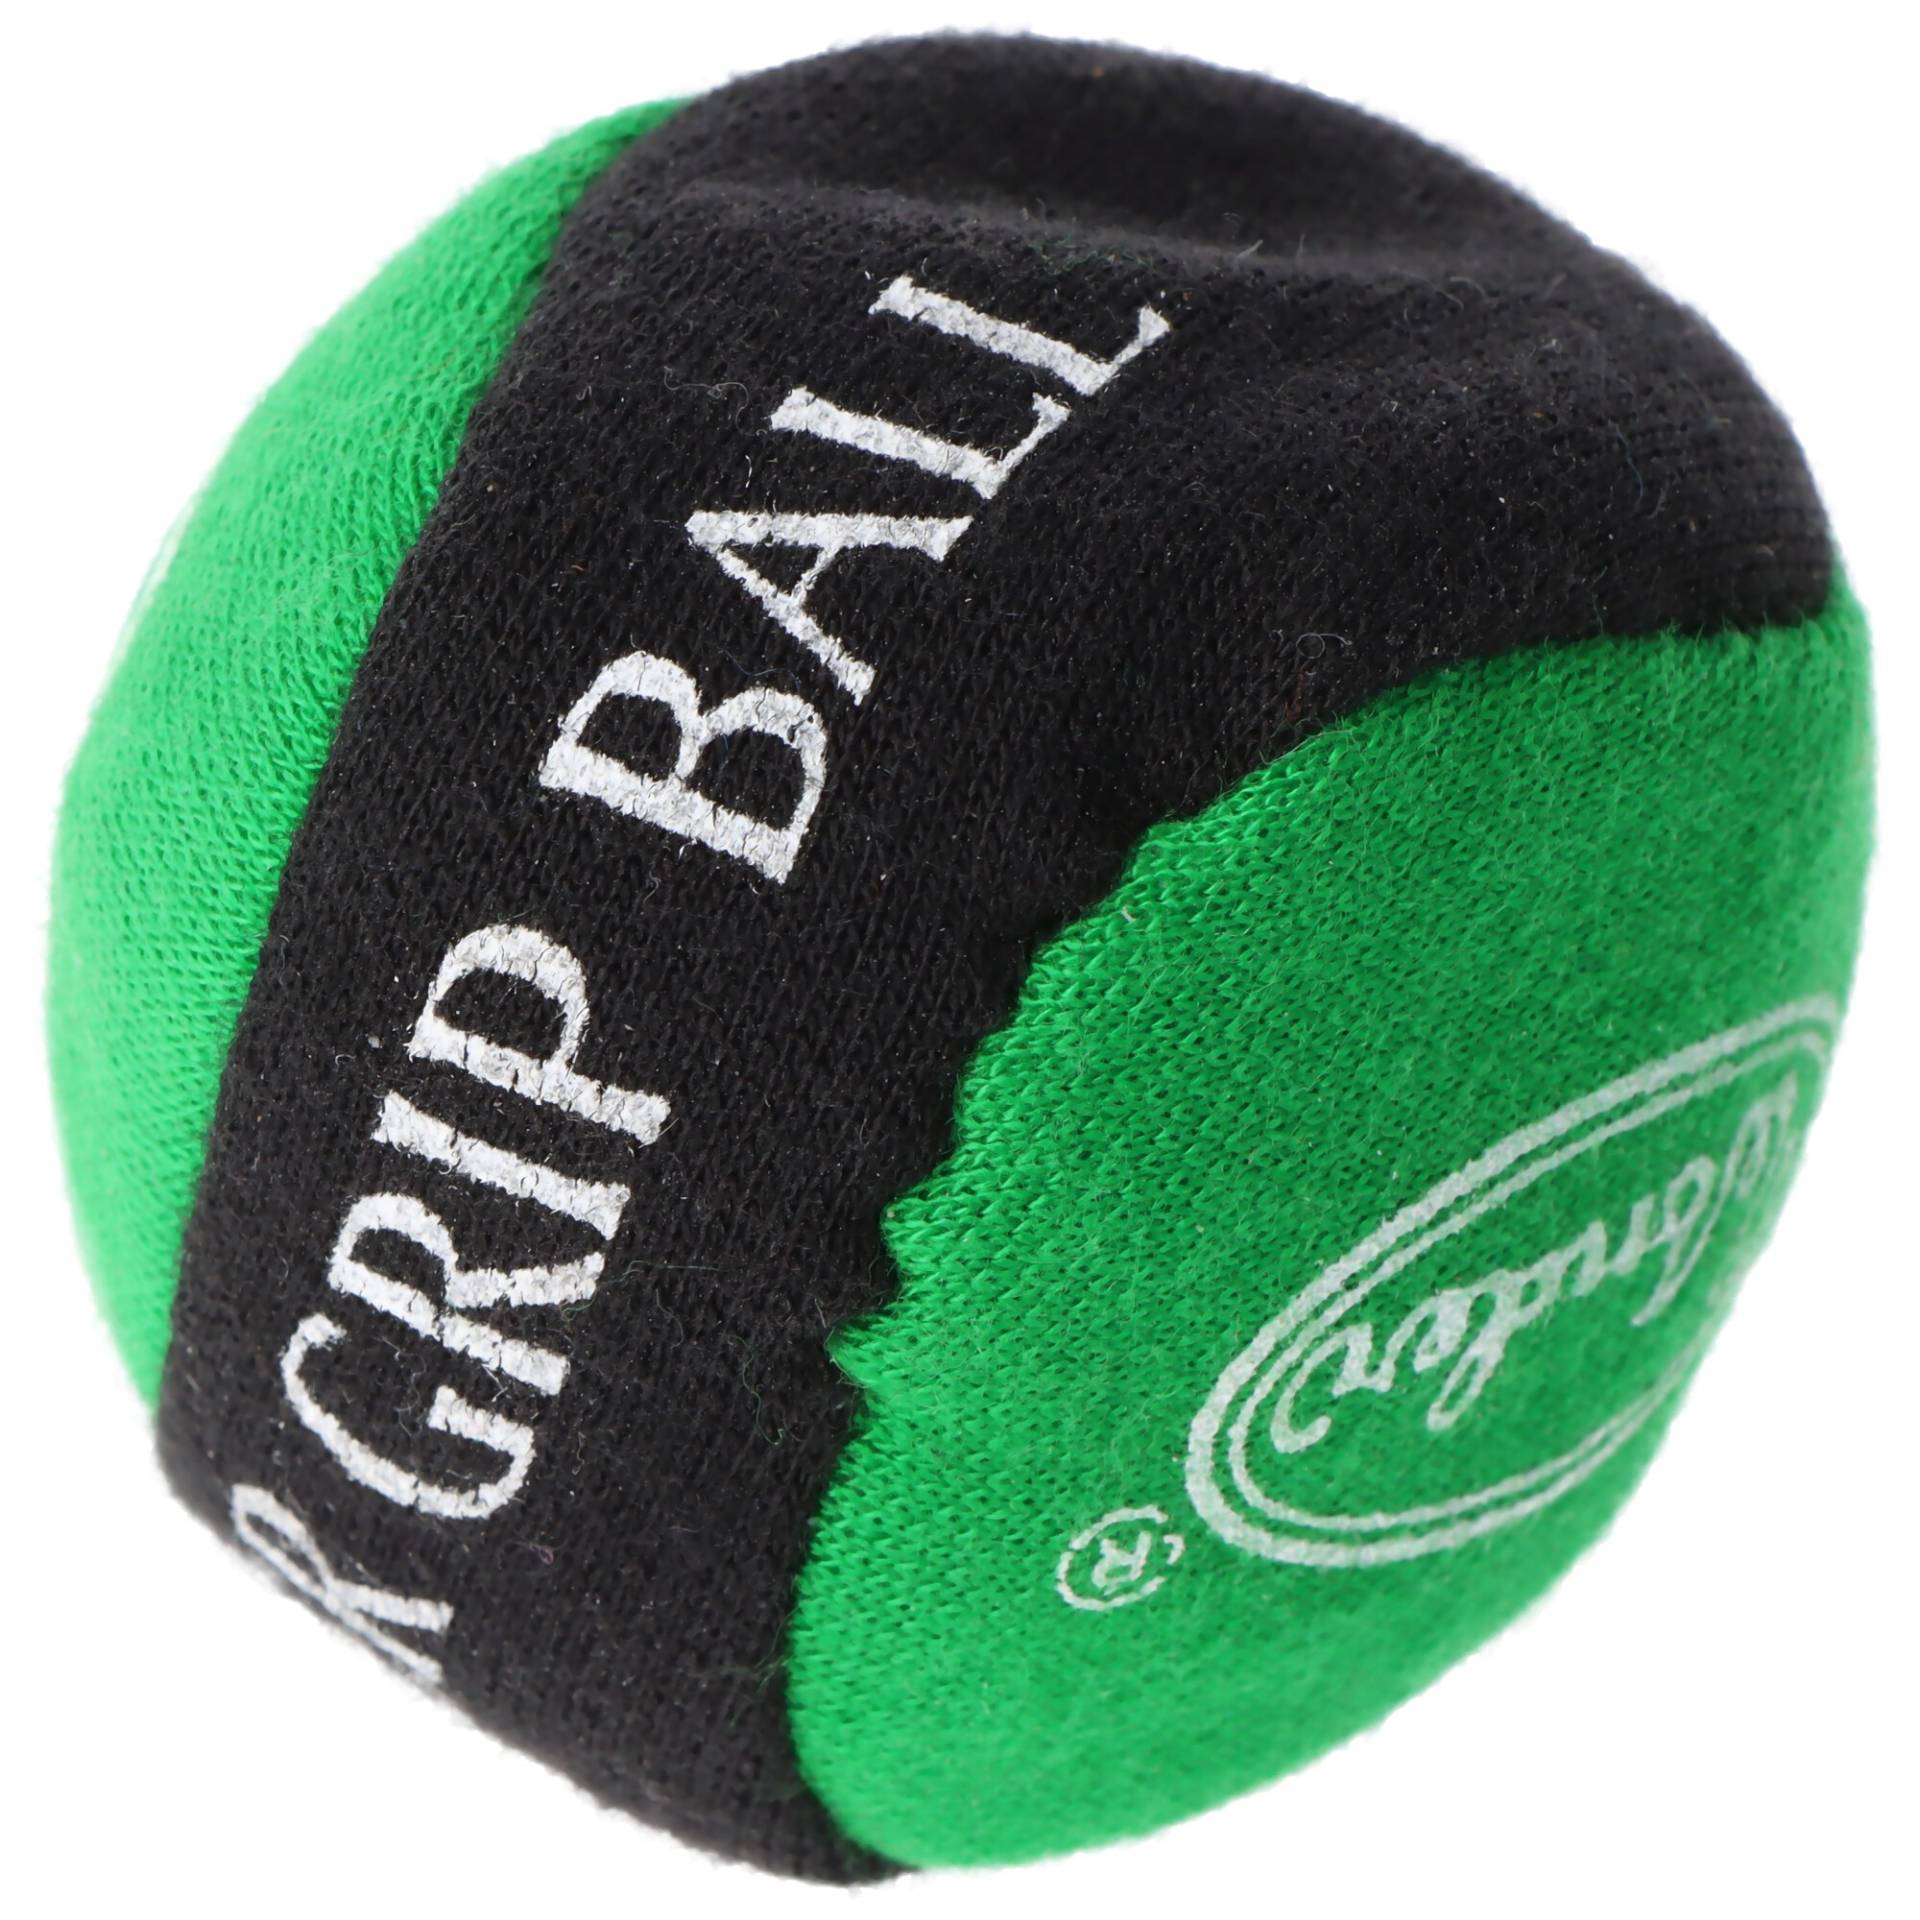 Power Grip Ball, grün schwarz, Talkball gegen feuchte Hände von kilo80